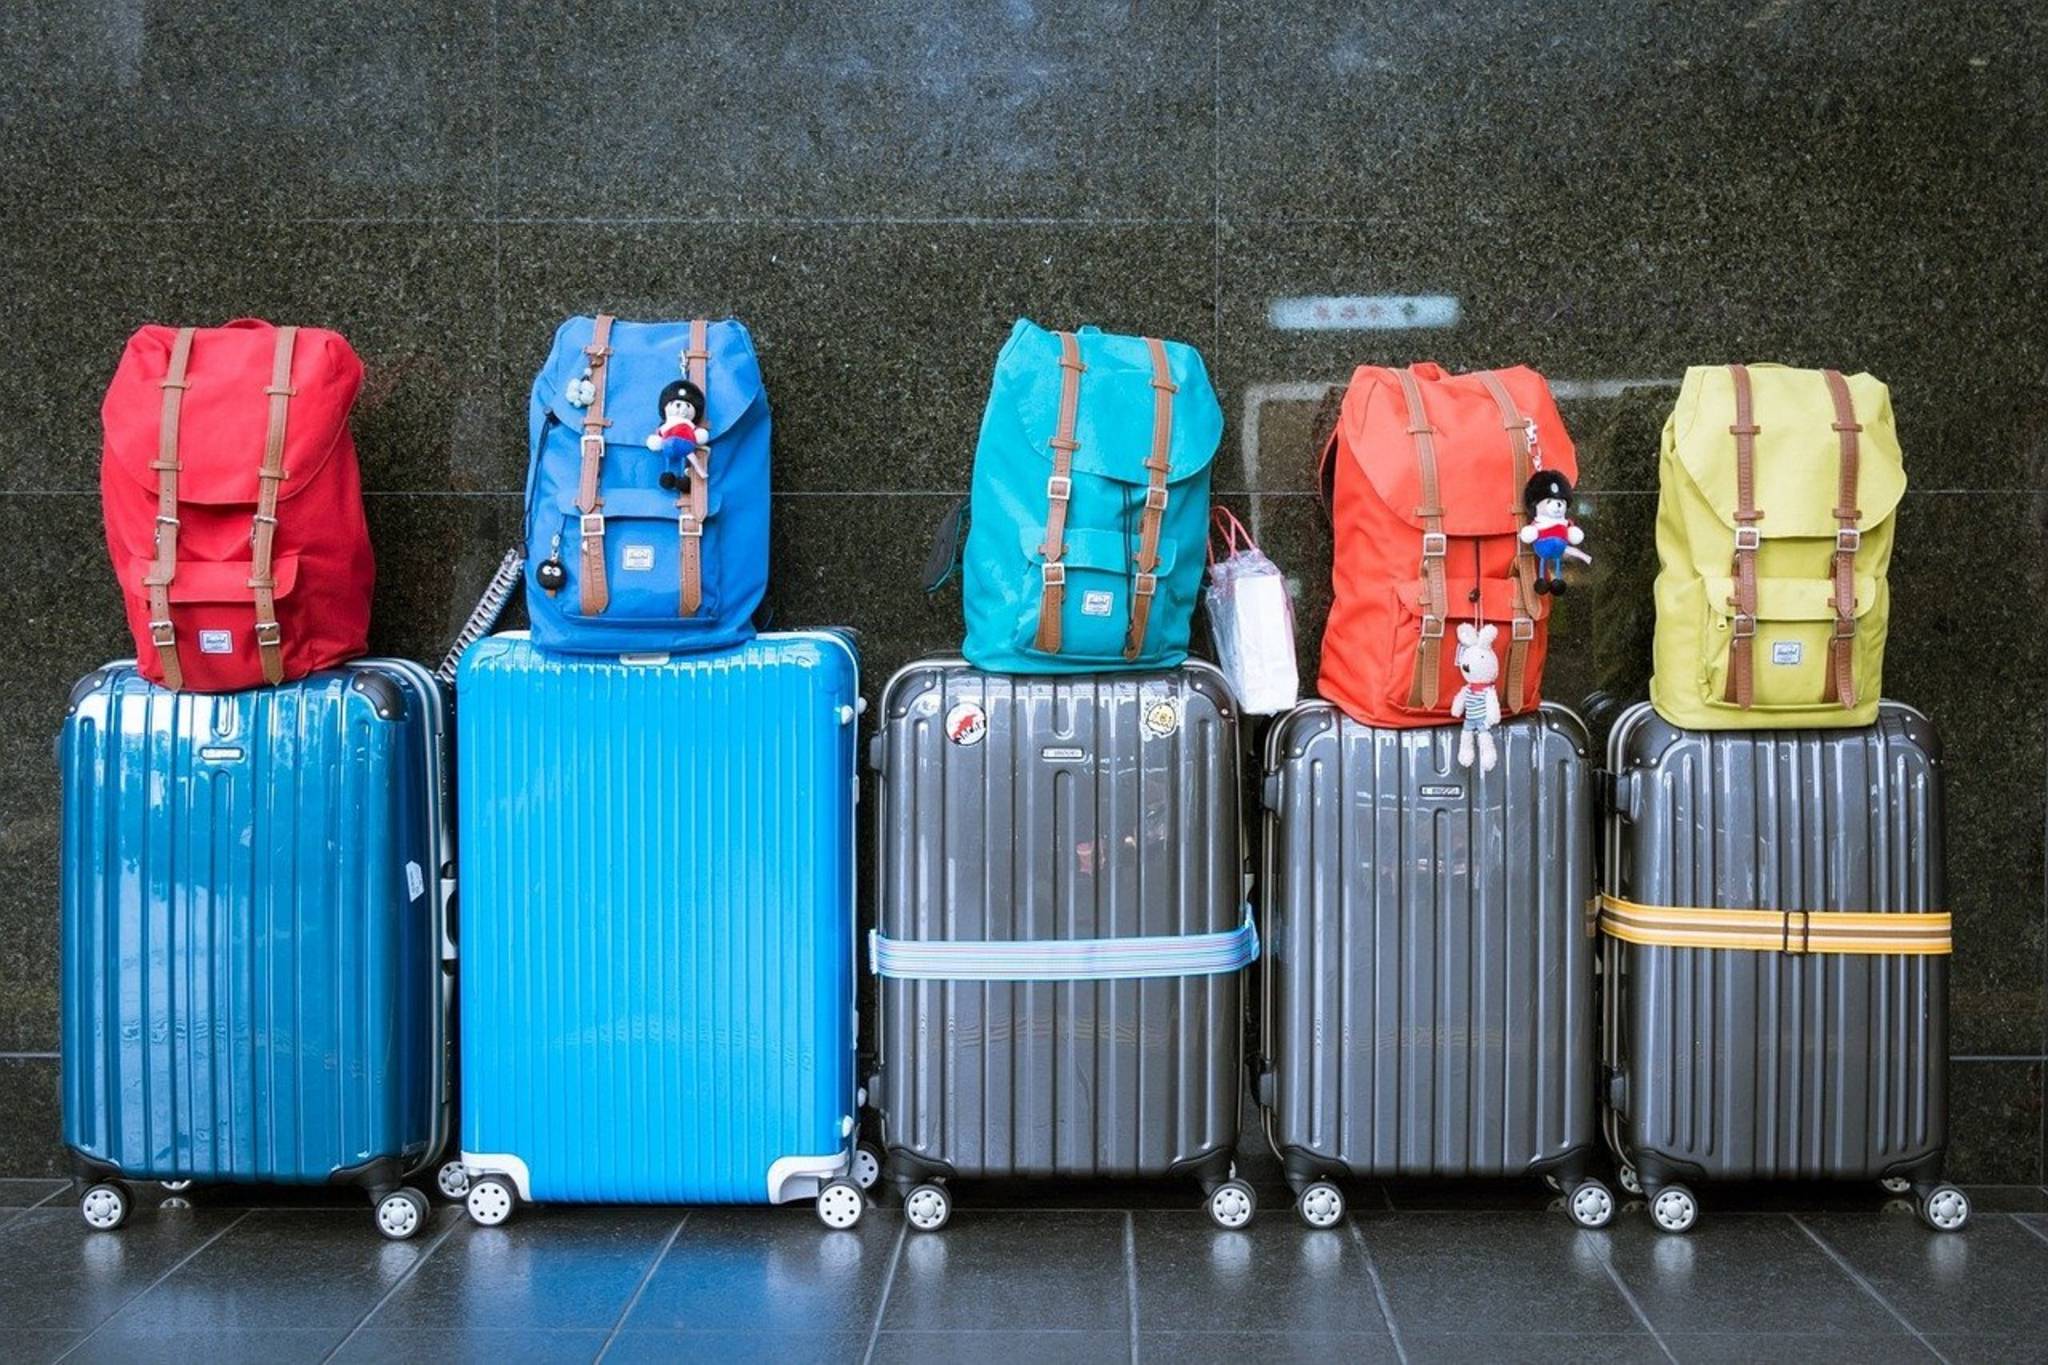 Fünf Reisekoffer mit je einem Rucksack obenauf stehen in einer Rehei nebeneinander vor einer Wand